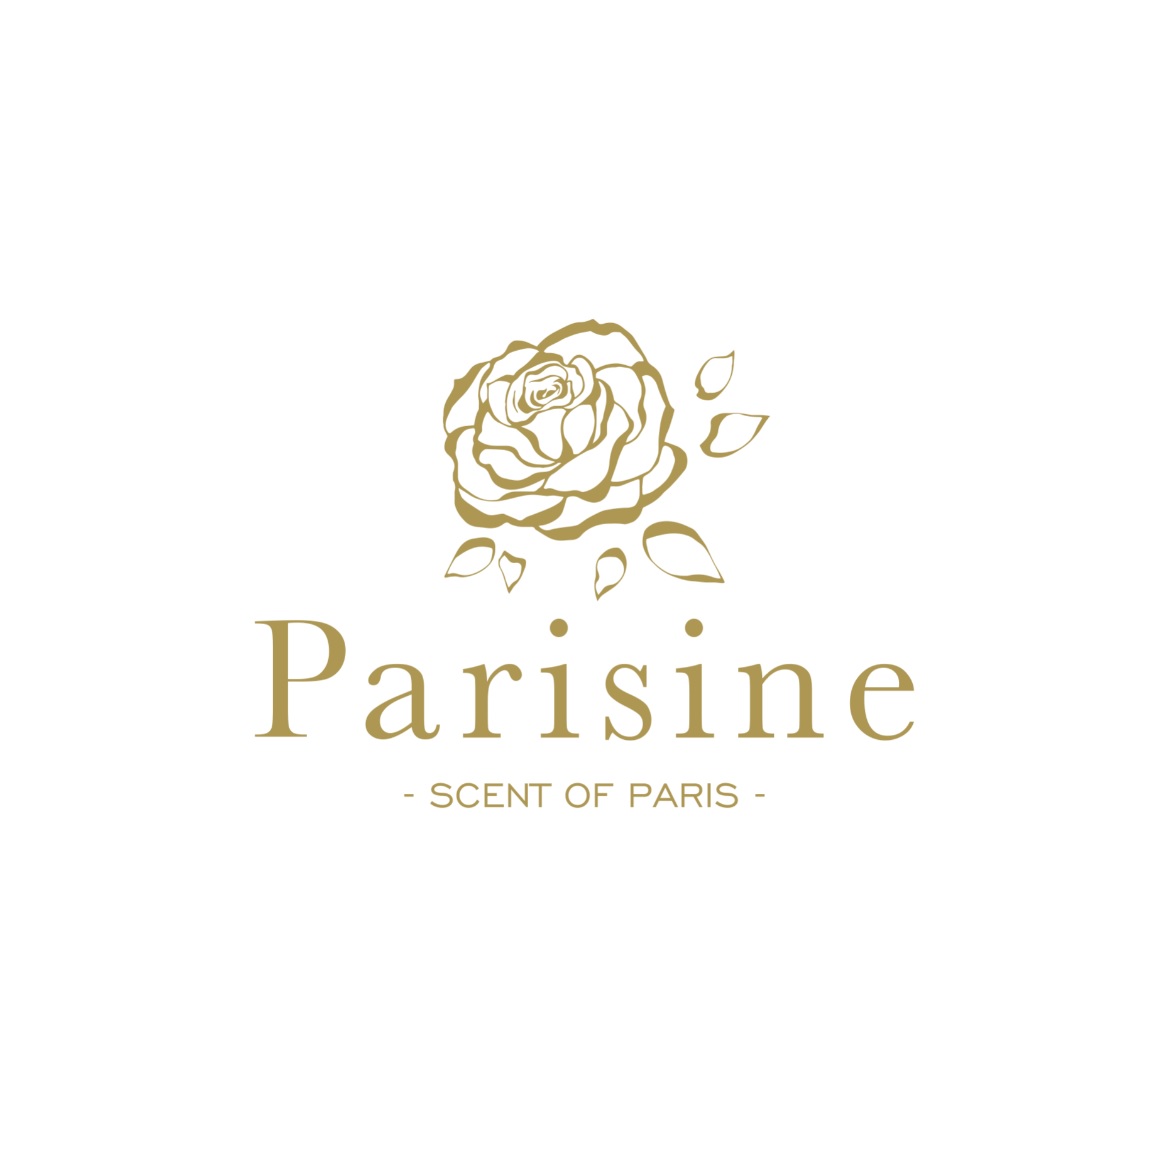 Parisine (coming soon)